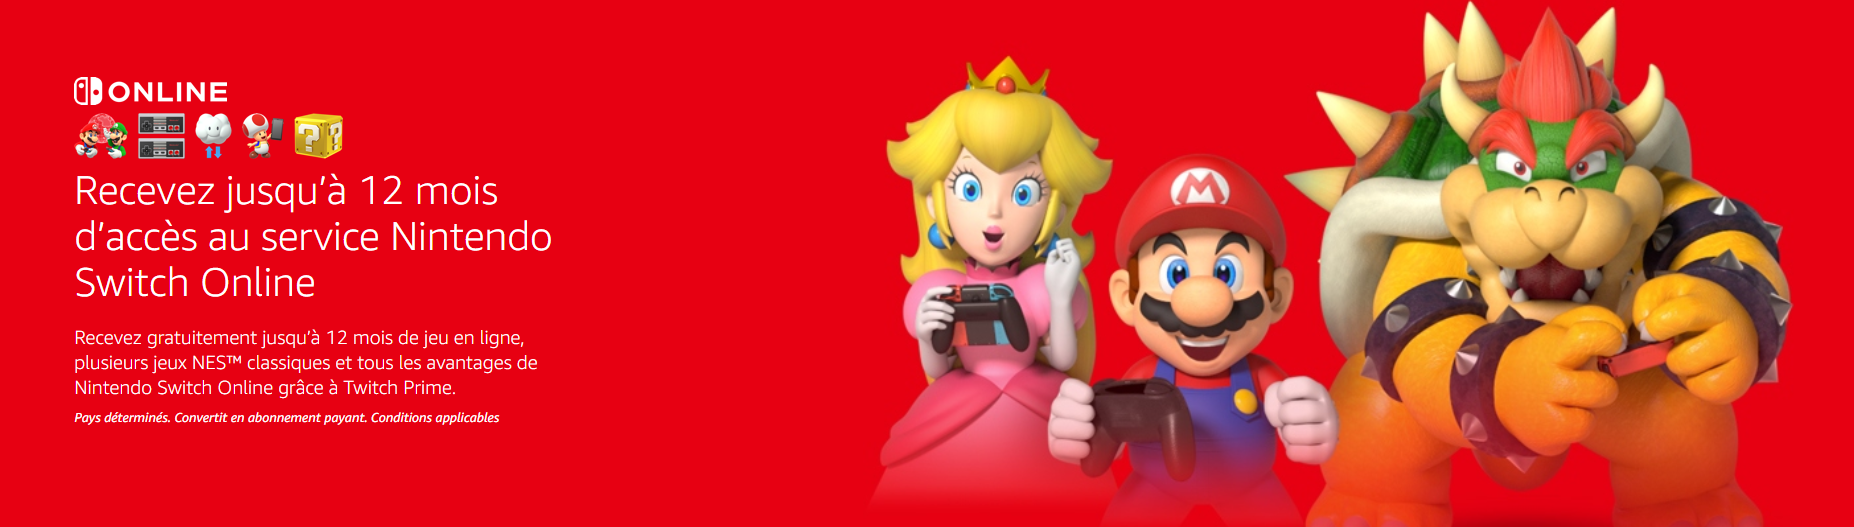 Nintendo Switch Abonnement Online Gratuit Twitch Prime